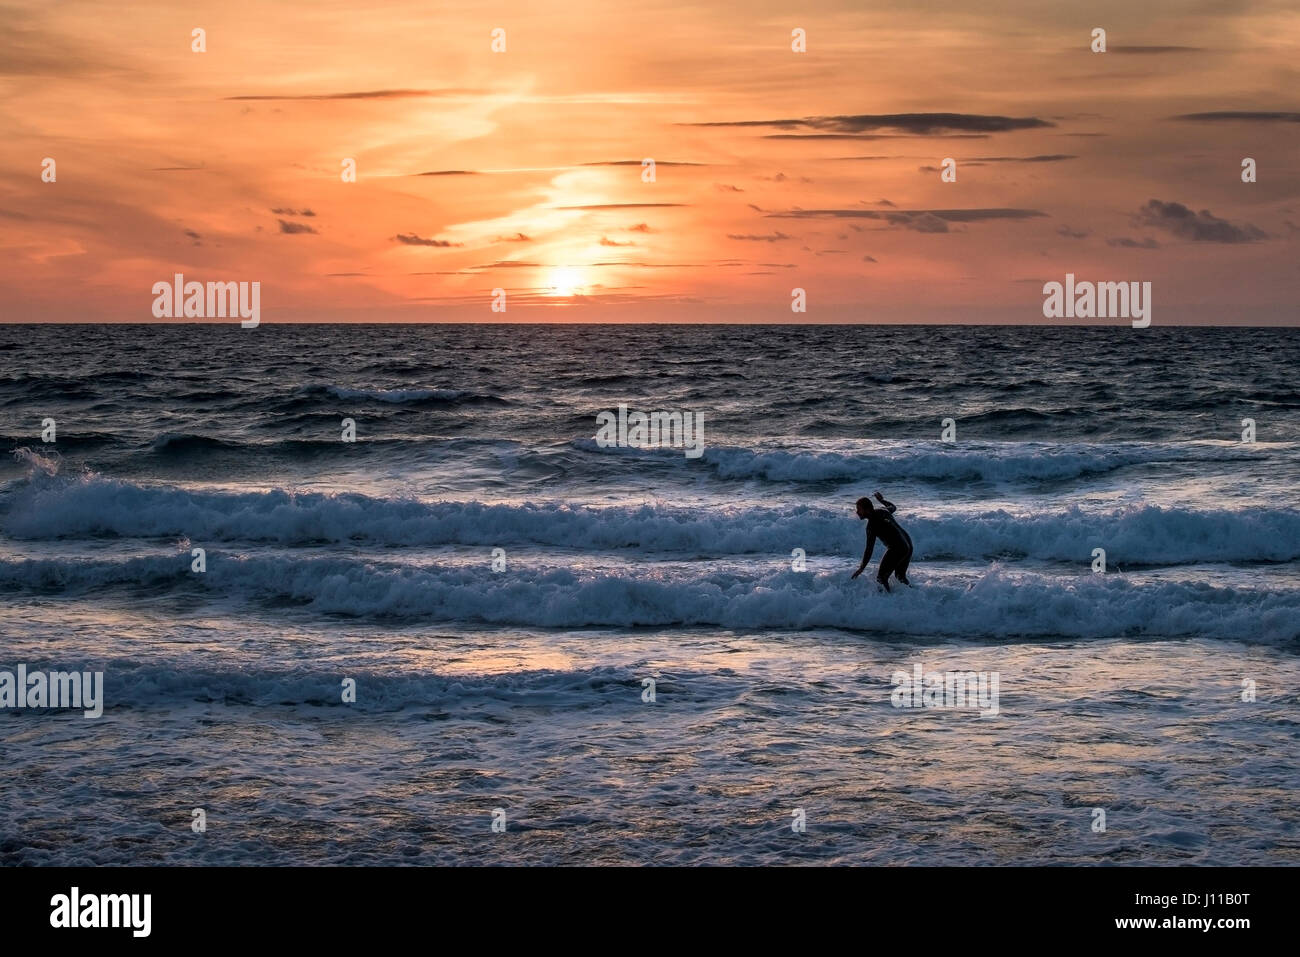 Surfen-UK; Surfer; Sonnenuntergang; Intensiven Sonnenuntergang; Am Abend; Fistral; Cornwall; Welle; Meer; Watersport; Körperliche Aktivität; Skill; Freizeitbeschäftigung; Lebensstil; Stockfoto